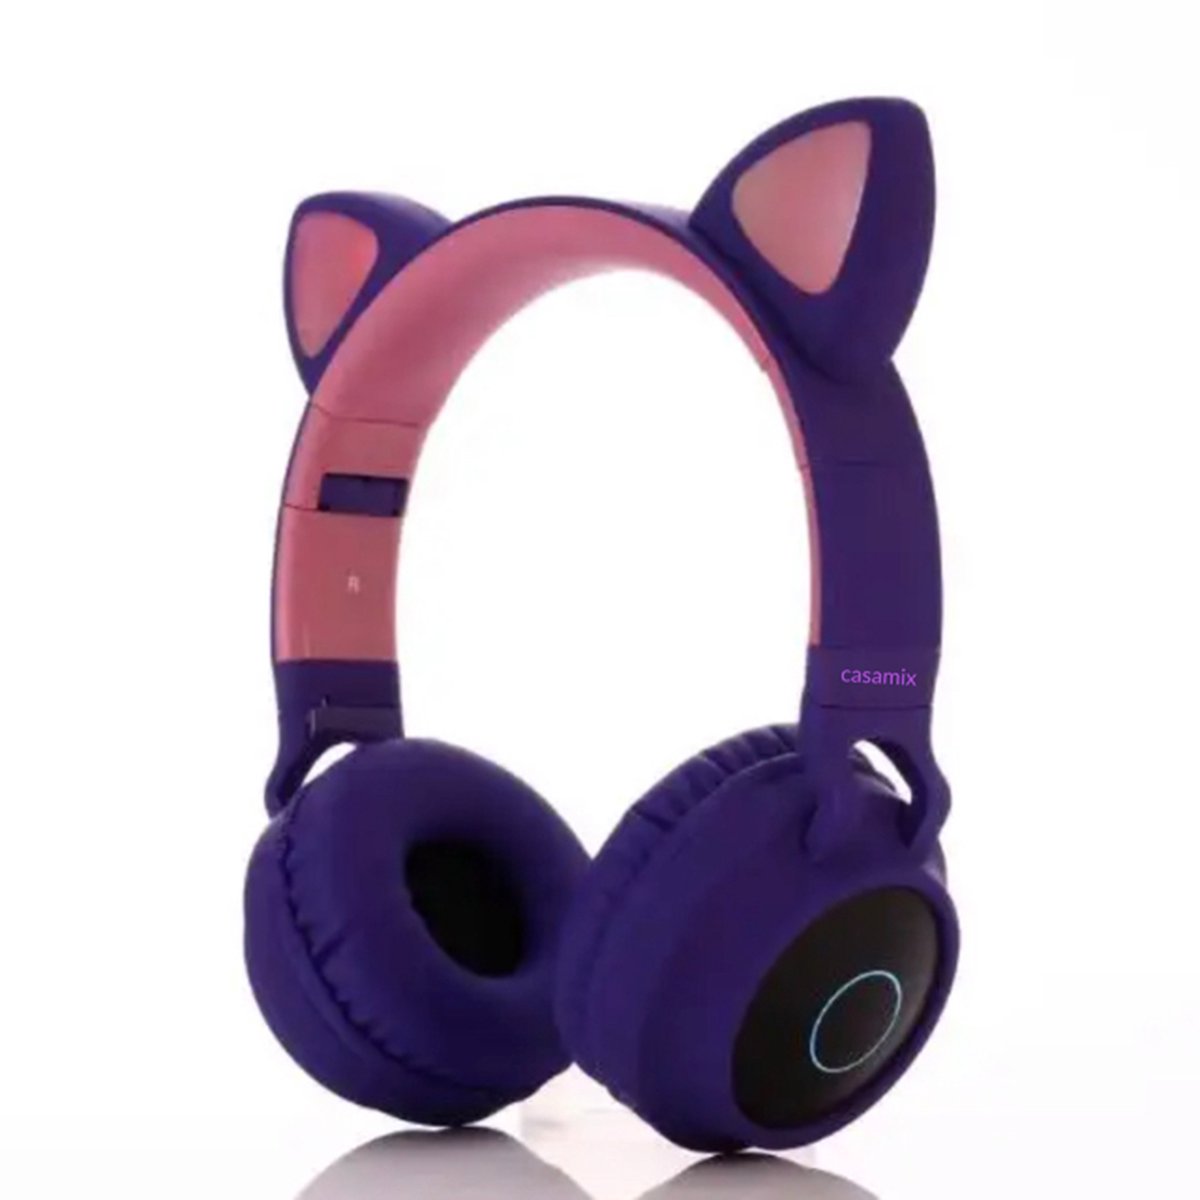 Casamix Kinder hoofdtelefoon pro - kattenoortjes paars- NL handleiding -cat headphones- Draadloze koptelefoon Bluetooth - Met Led Kat Oortjes | met verlichting poot- Kat oor Koptelefoon draadloze Bluetooth met flitslicht